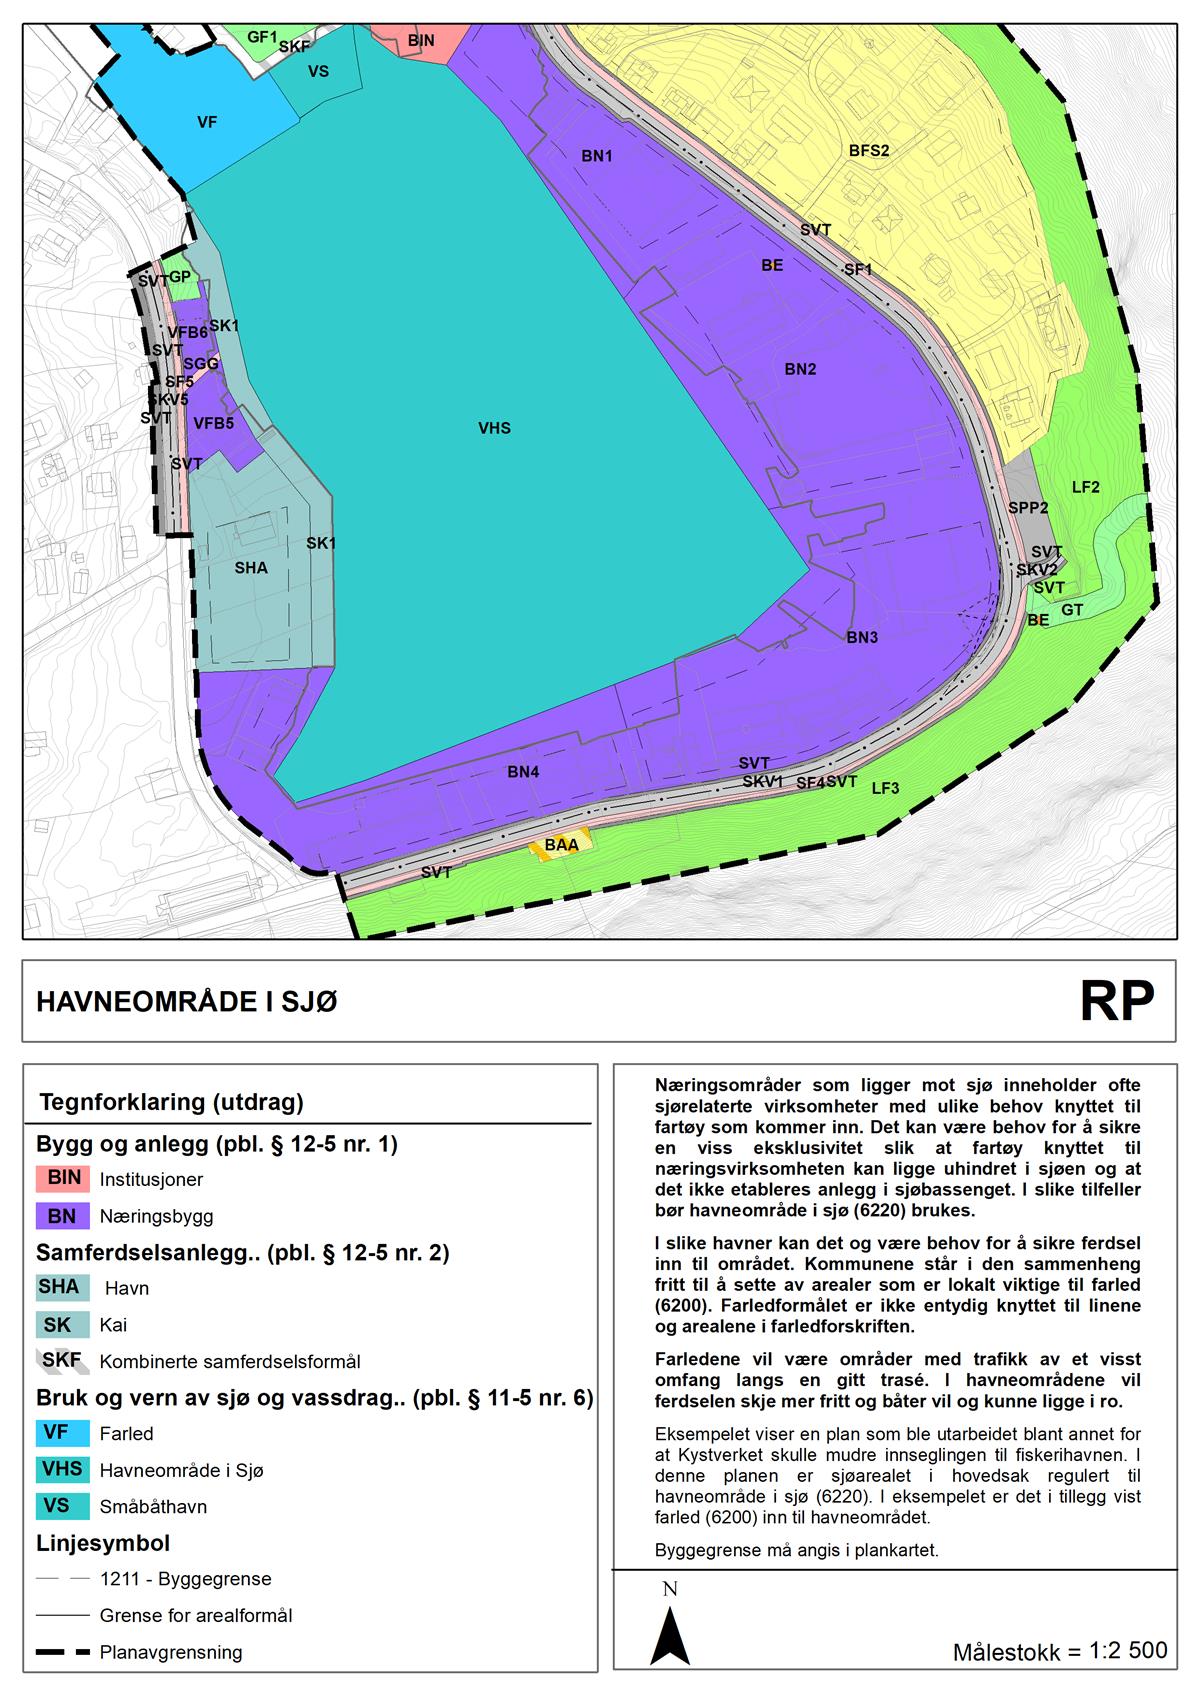 Reguleringsplan for havneområde i sjø og tilgrensende næringsområde m.m.